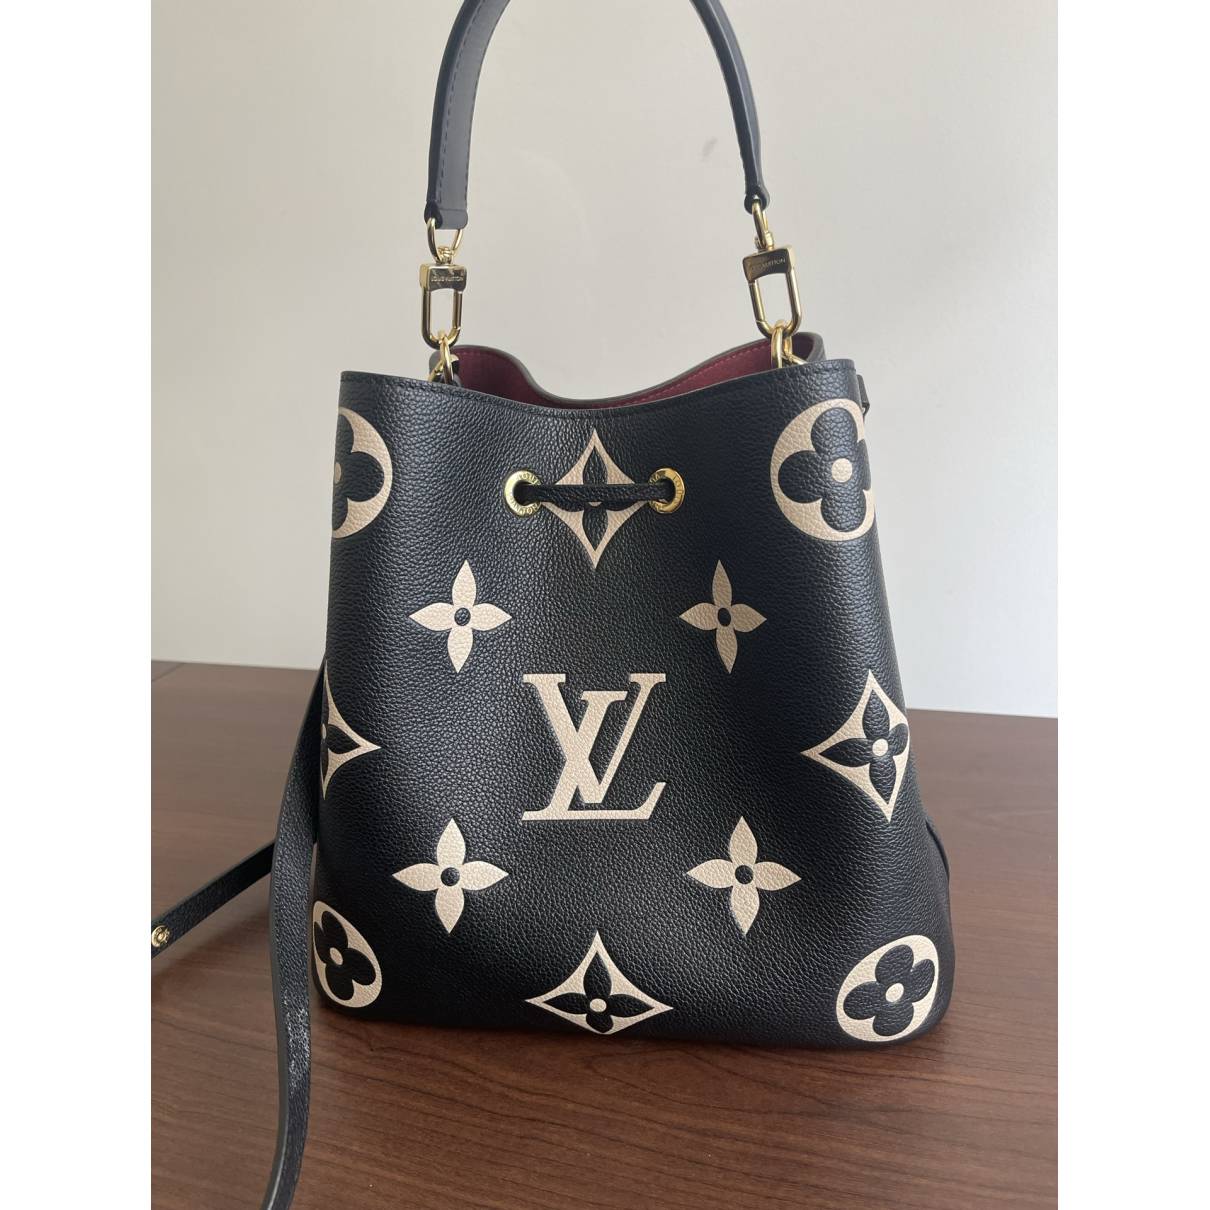 Luis Vuitton plastic bag  Cheap louis vuitton handbags, Louis vuitton  handbags, Louis vuitton